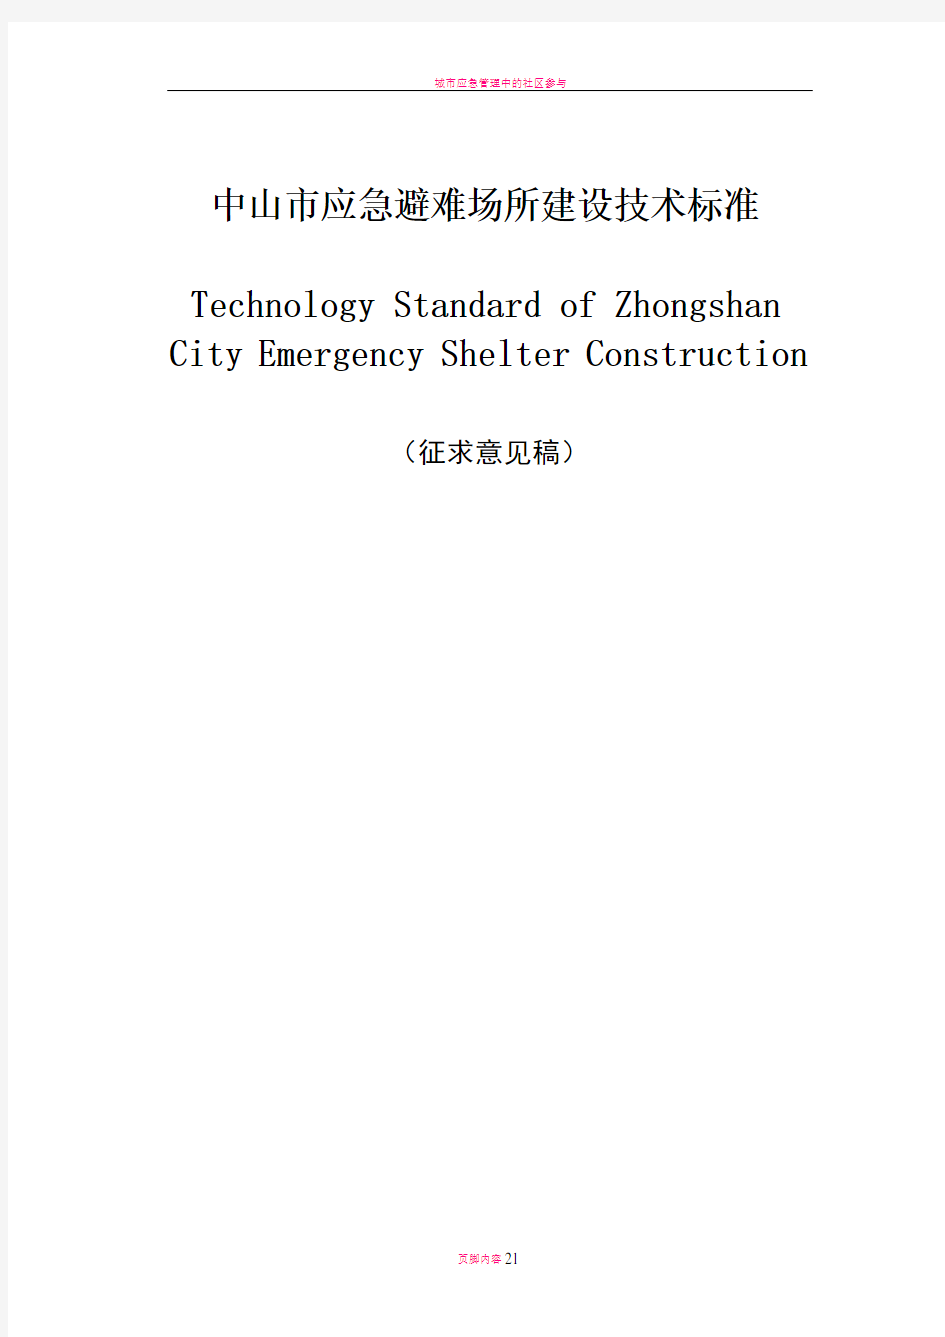 城市应急避难场所建设技术标准.